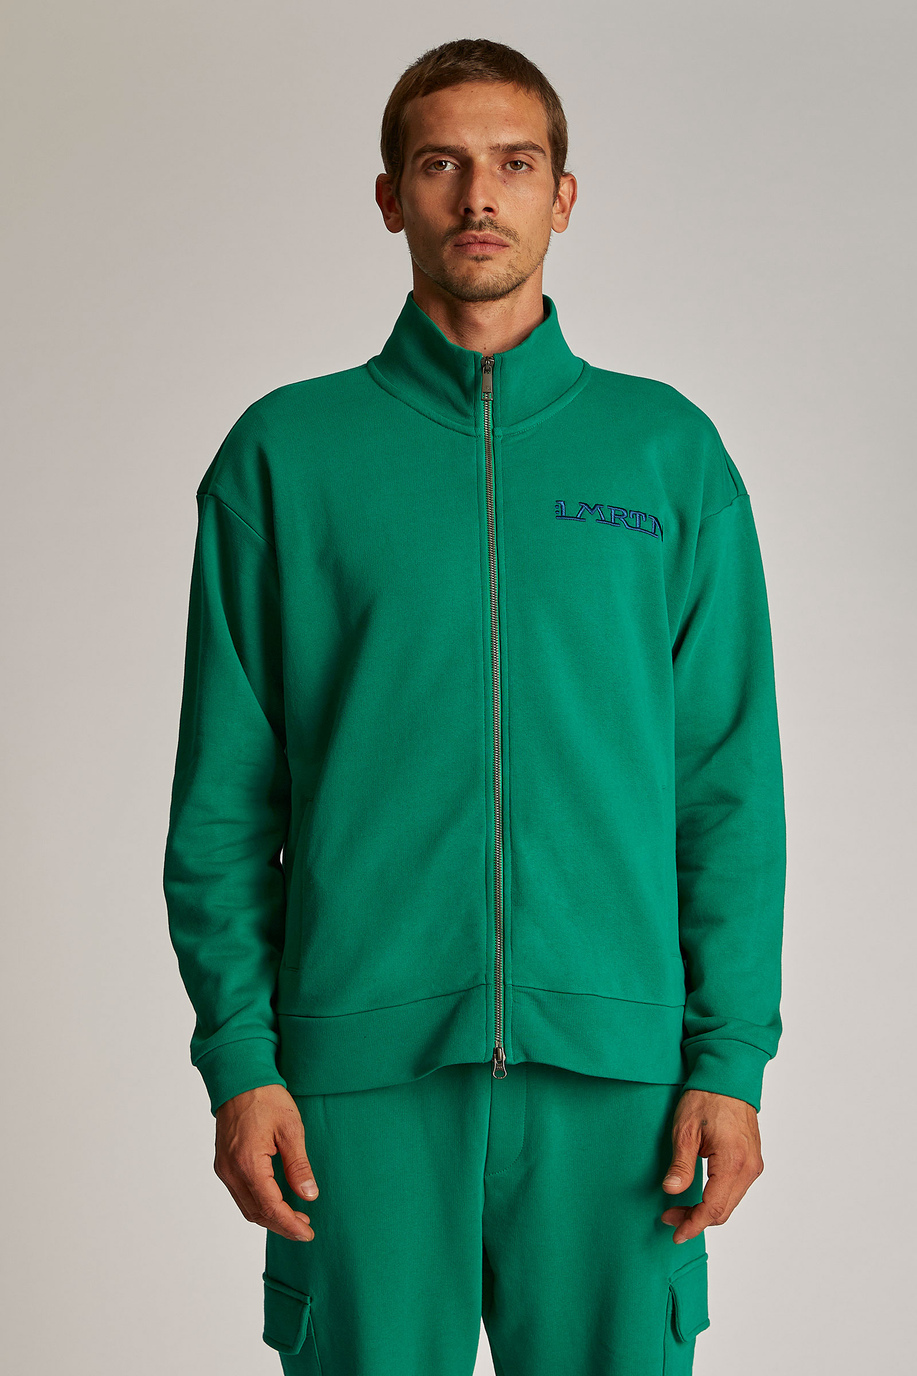 Sweat-shirt homme 100% coton, avec fermeture zippée et coupe oversize - Inspiration | La Martina - Official Online Shop